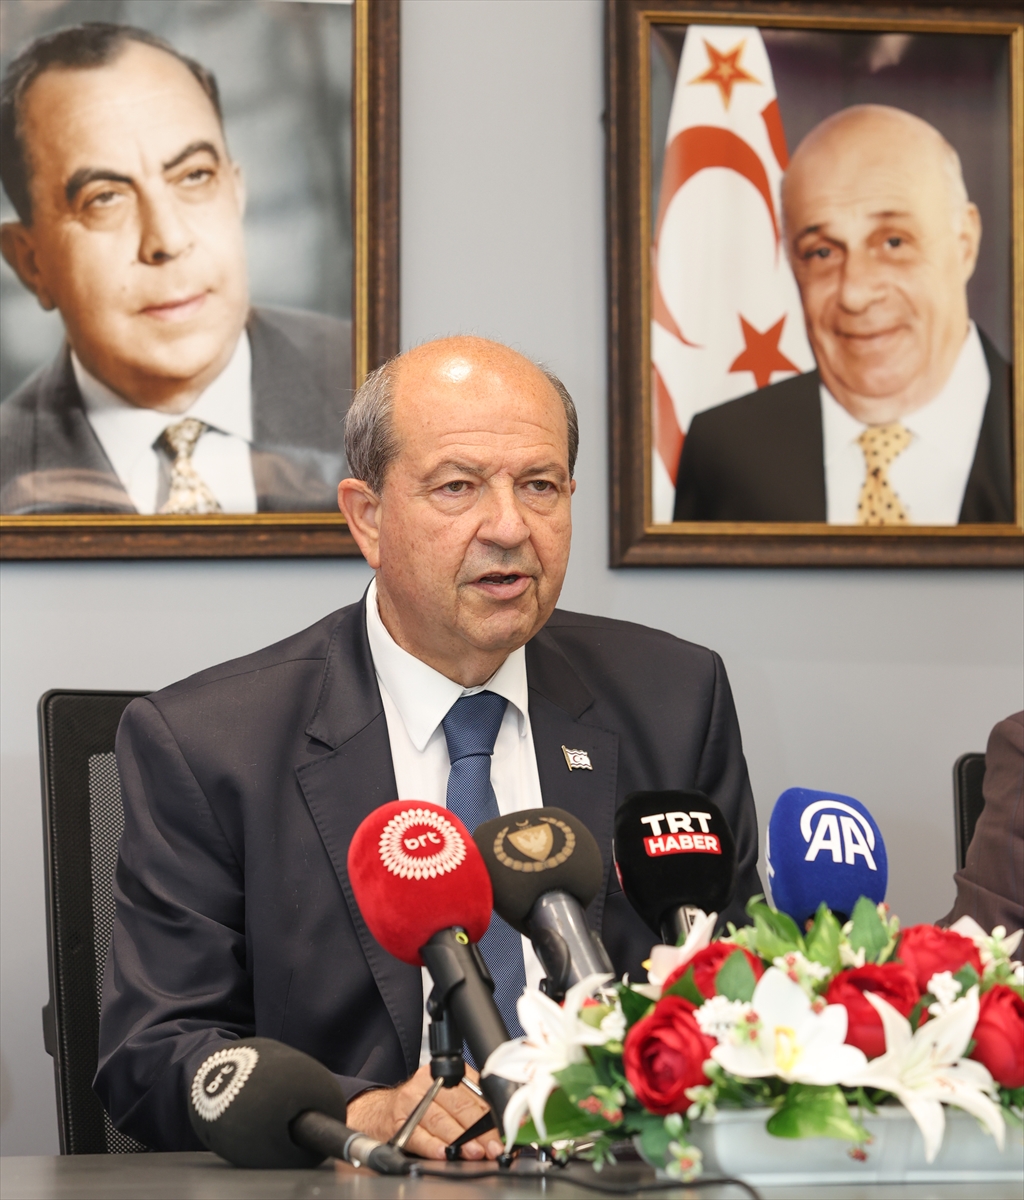 KKTC Cumhurbaşkanı Tatar: “Kıbrıs'ta federal temelde bir çözüm tükenmiştir”